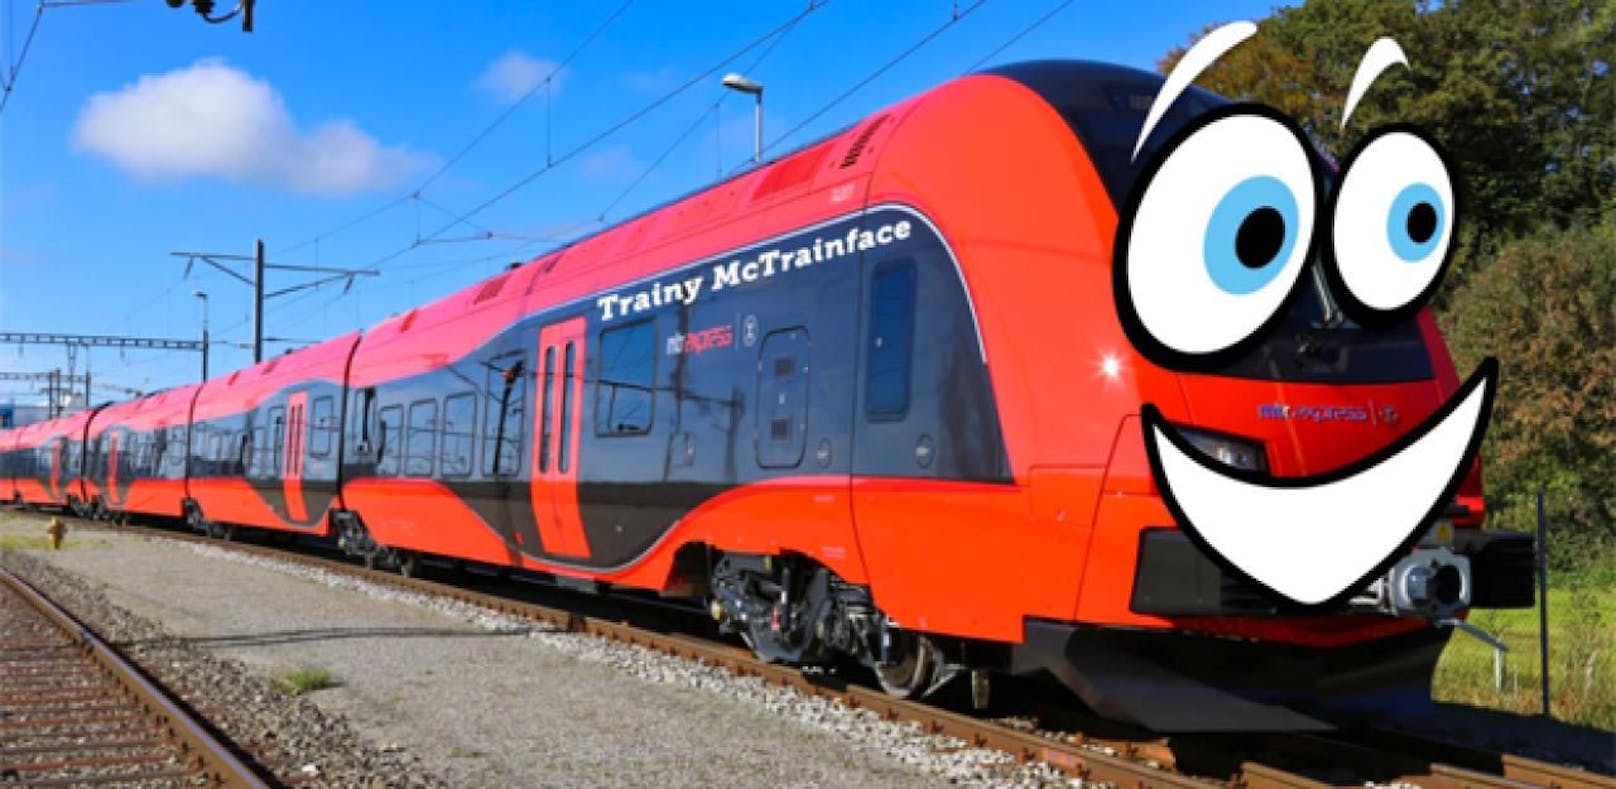 Online-Voter taufen neuen Zug "Trainy McTrainface"